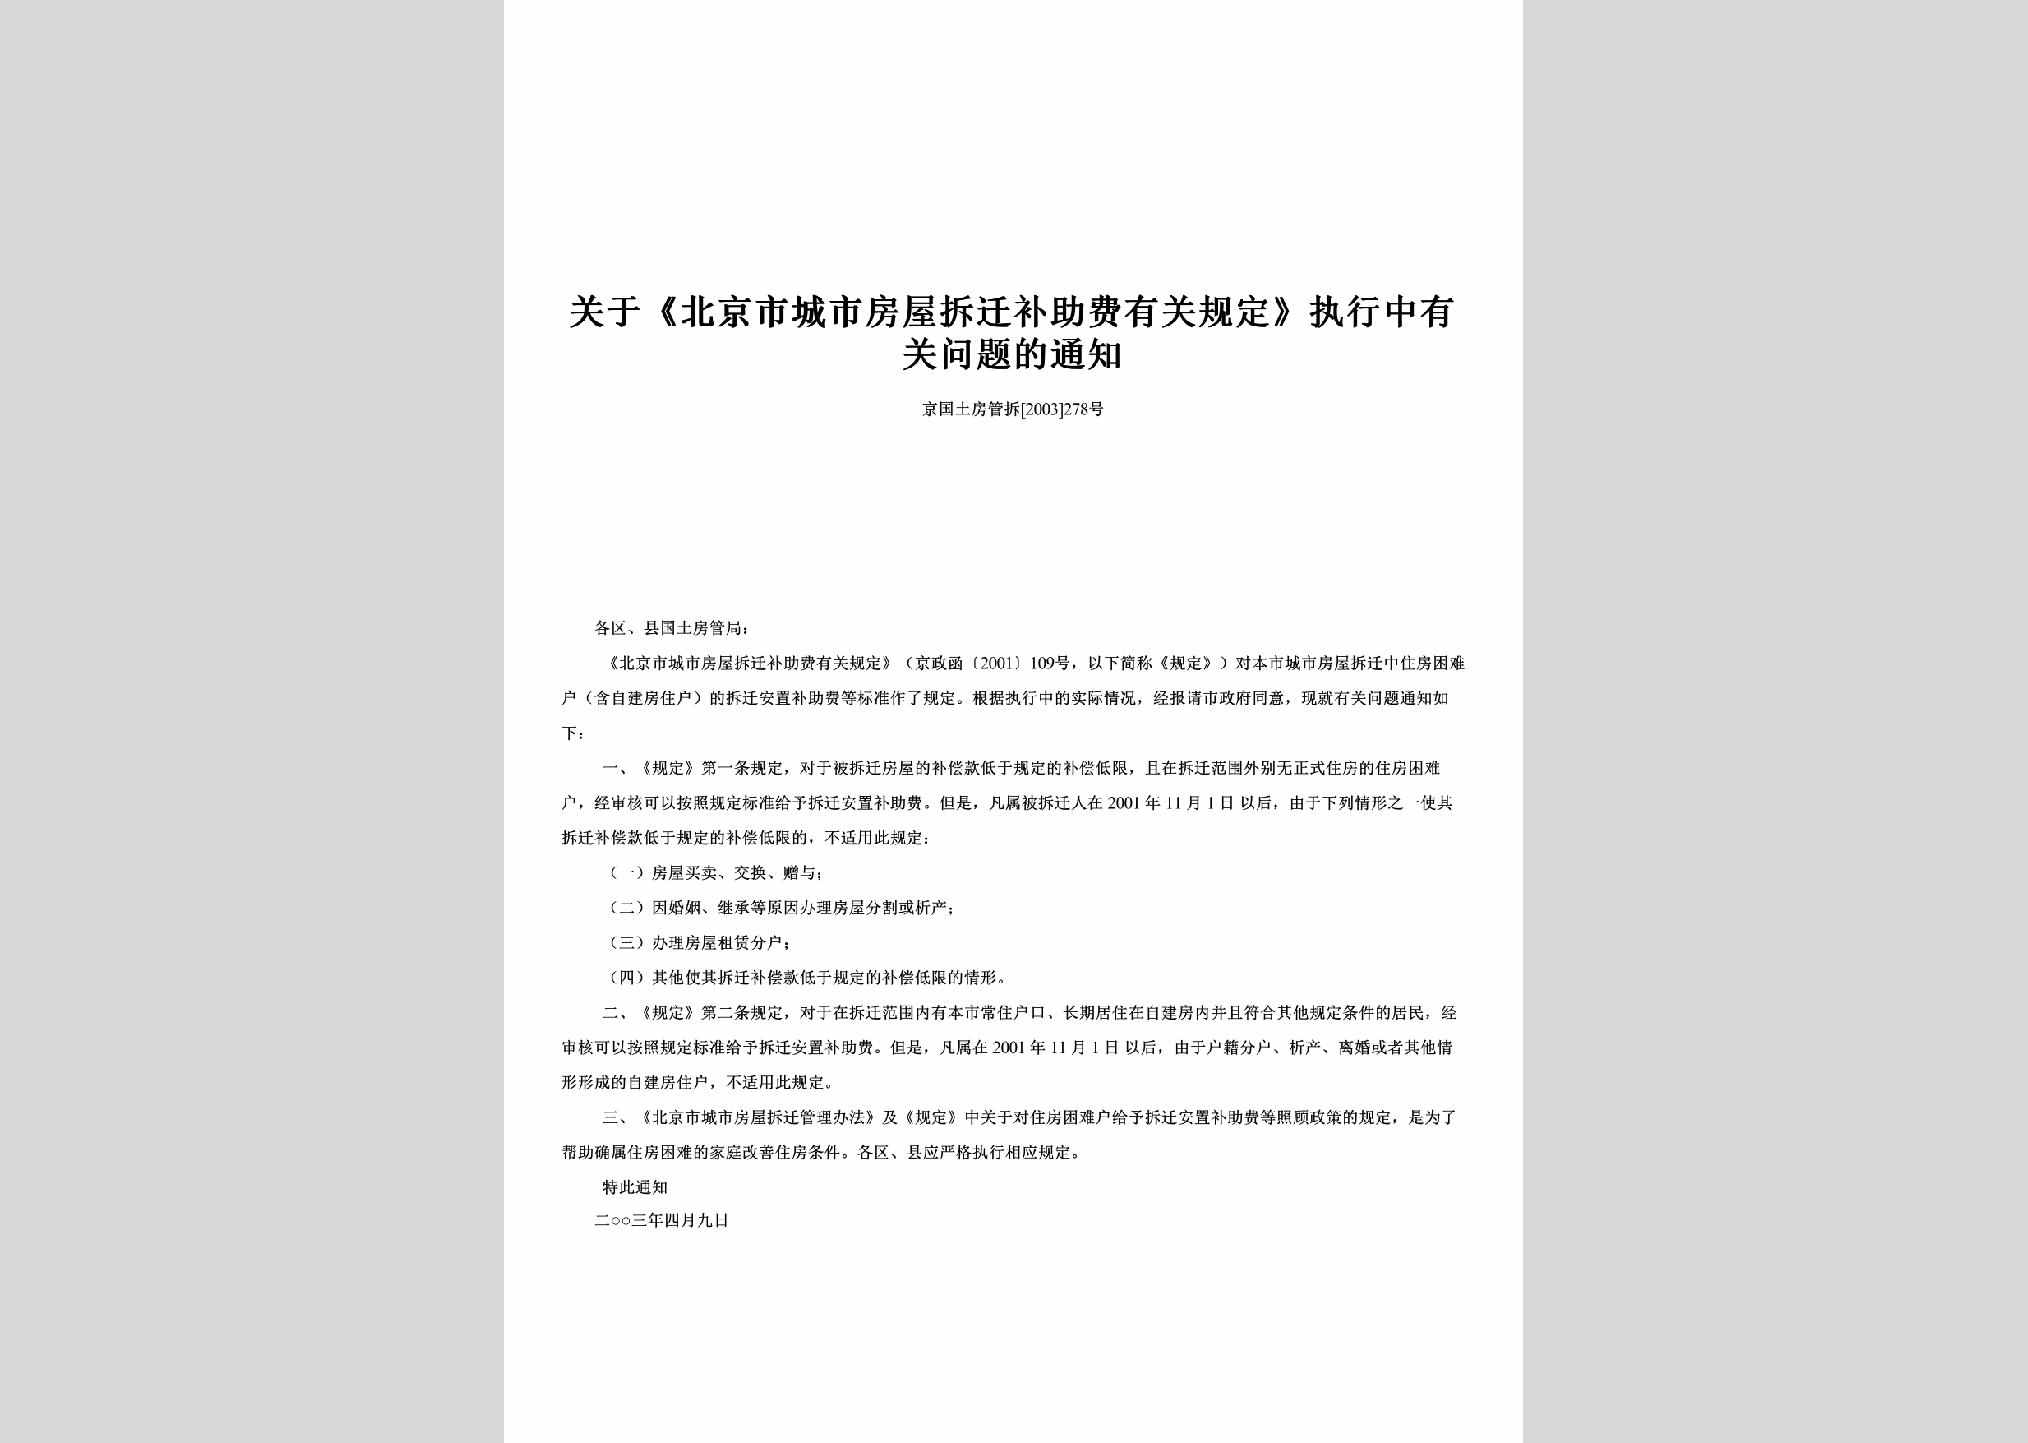 京国土房管拆[2003]278号：关于《北京市城市房屋拆迁补助费有关规定》执行中有关问题的通知